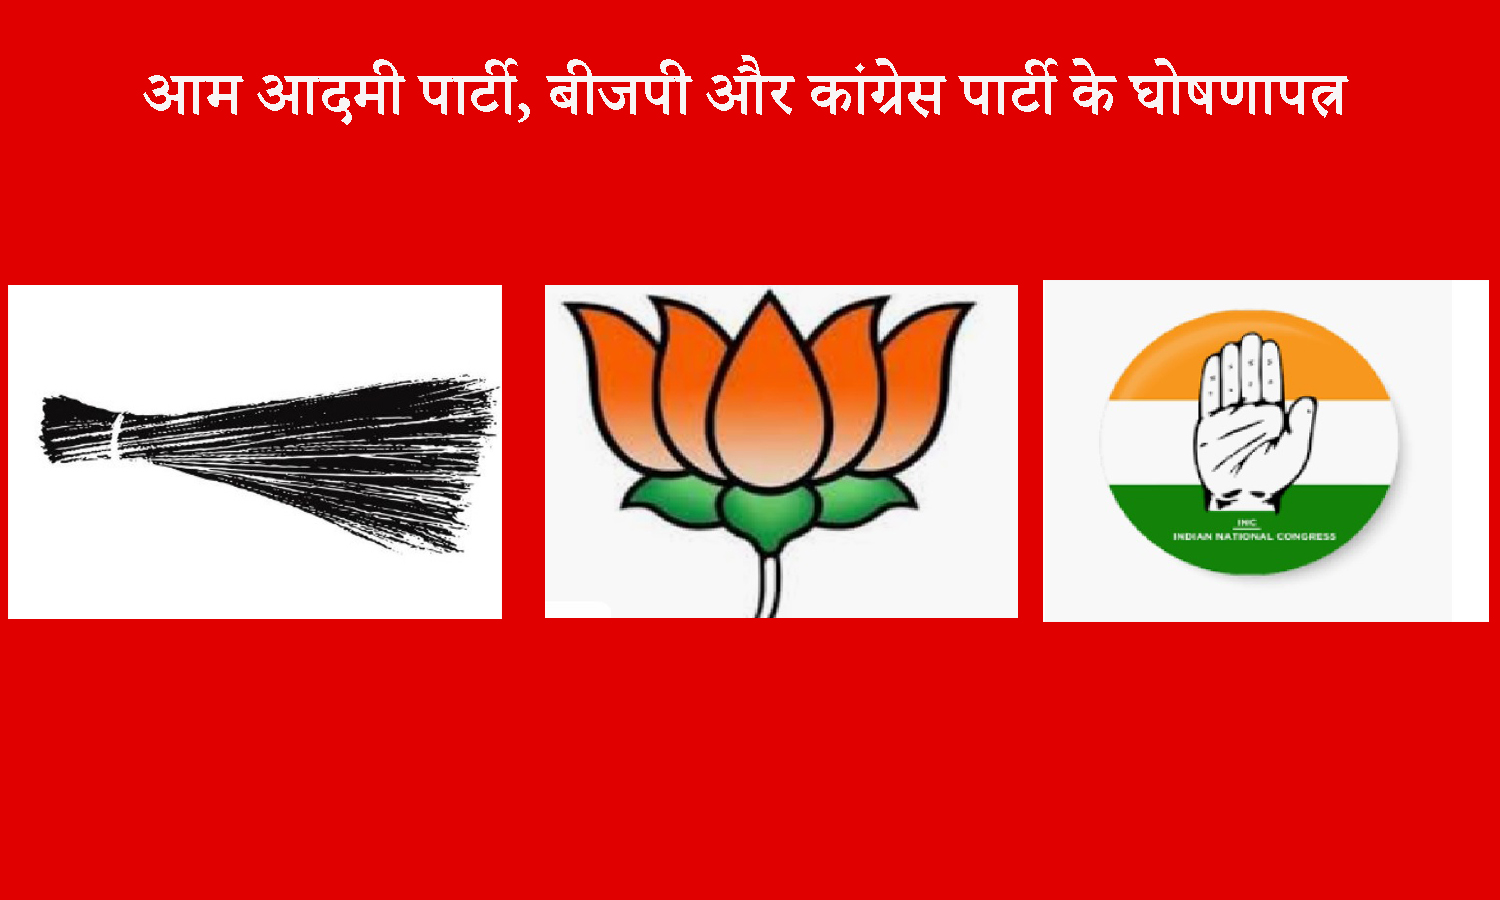 दिल्ली विधान सभा चुनाव से पूर्व आम आदमी पार्टी, बीजेपी और कांग्रेस का घोषणापत्र।